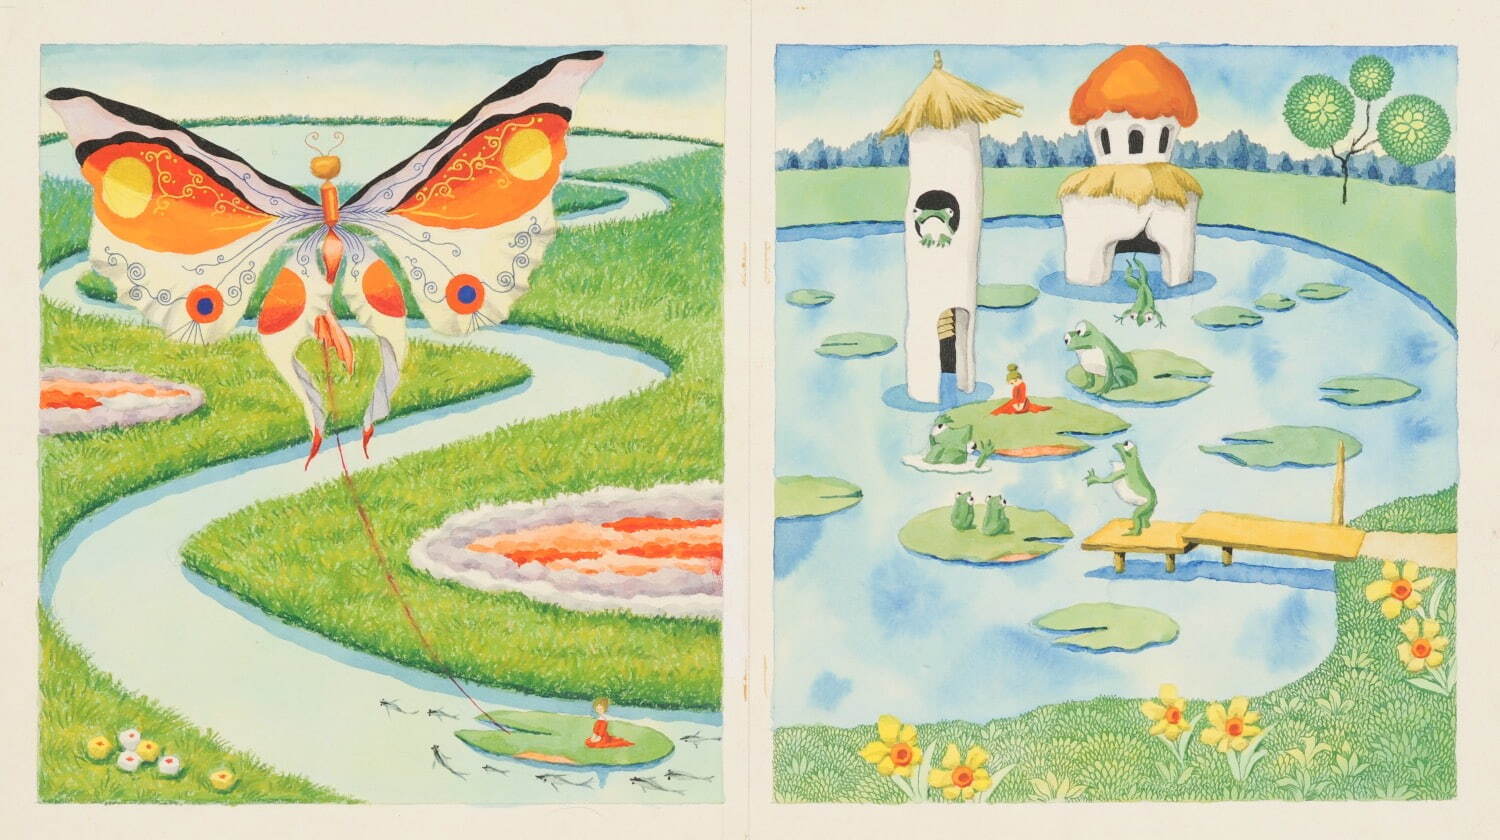 武井武雄 《おやゆびひめ》 1965年 クレヨン、水彩
© 岡谷市／イルフ童画館